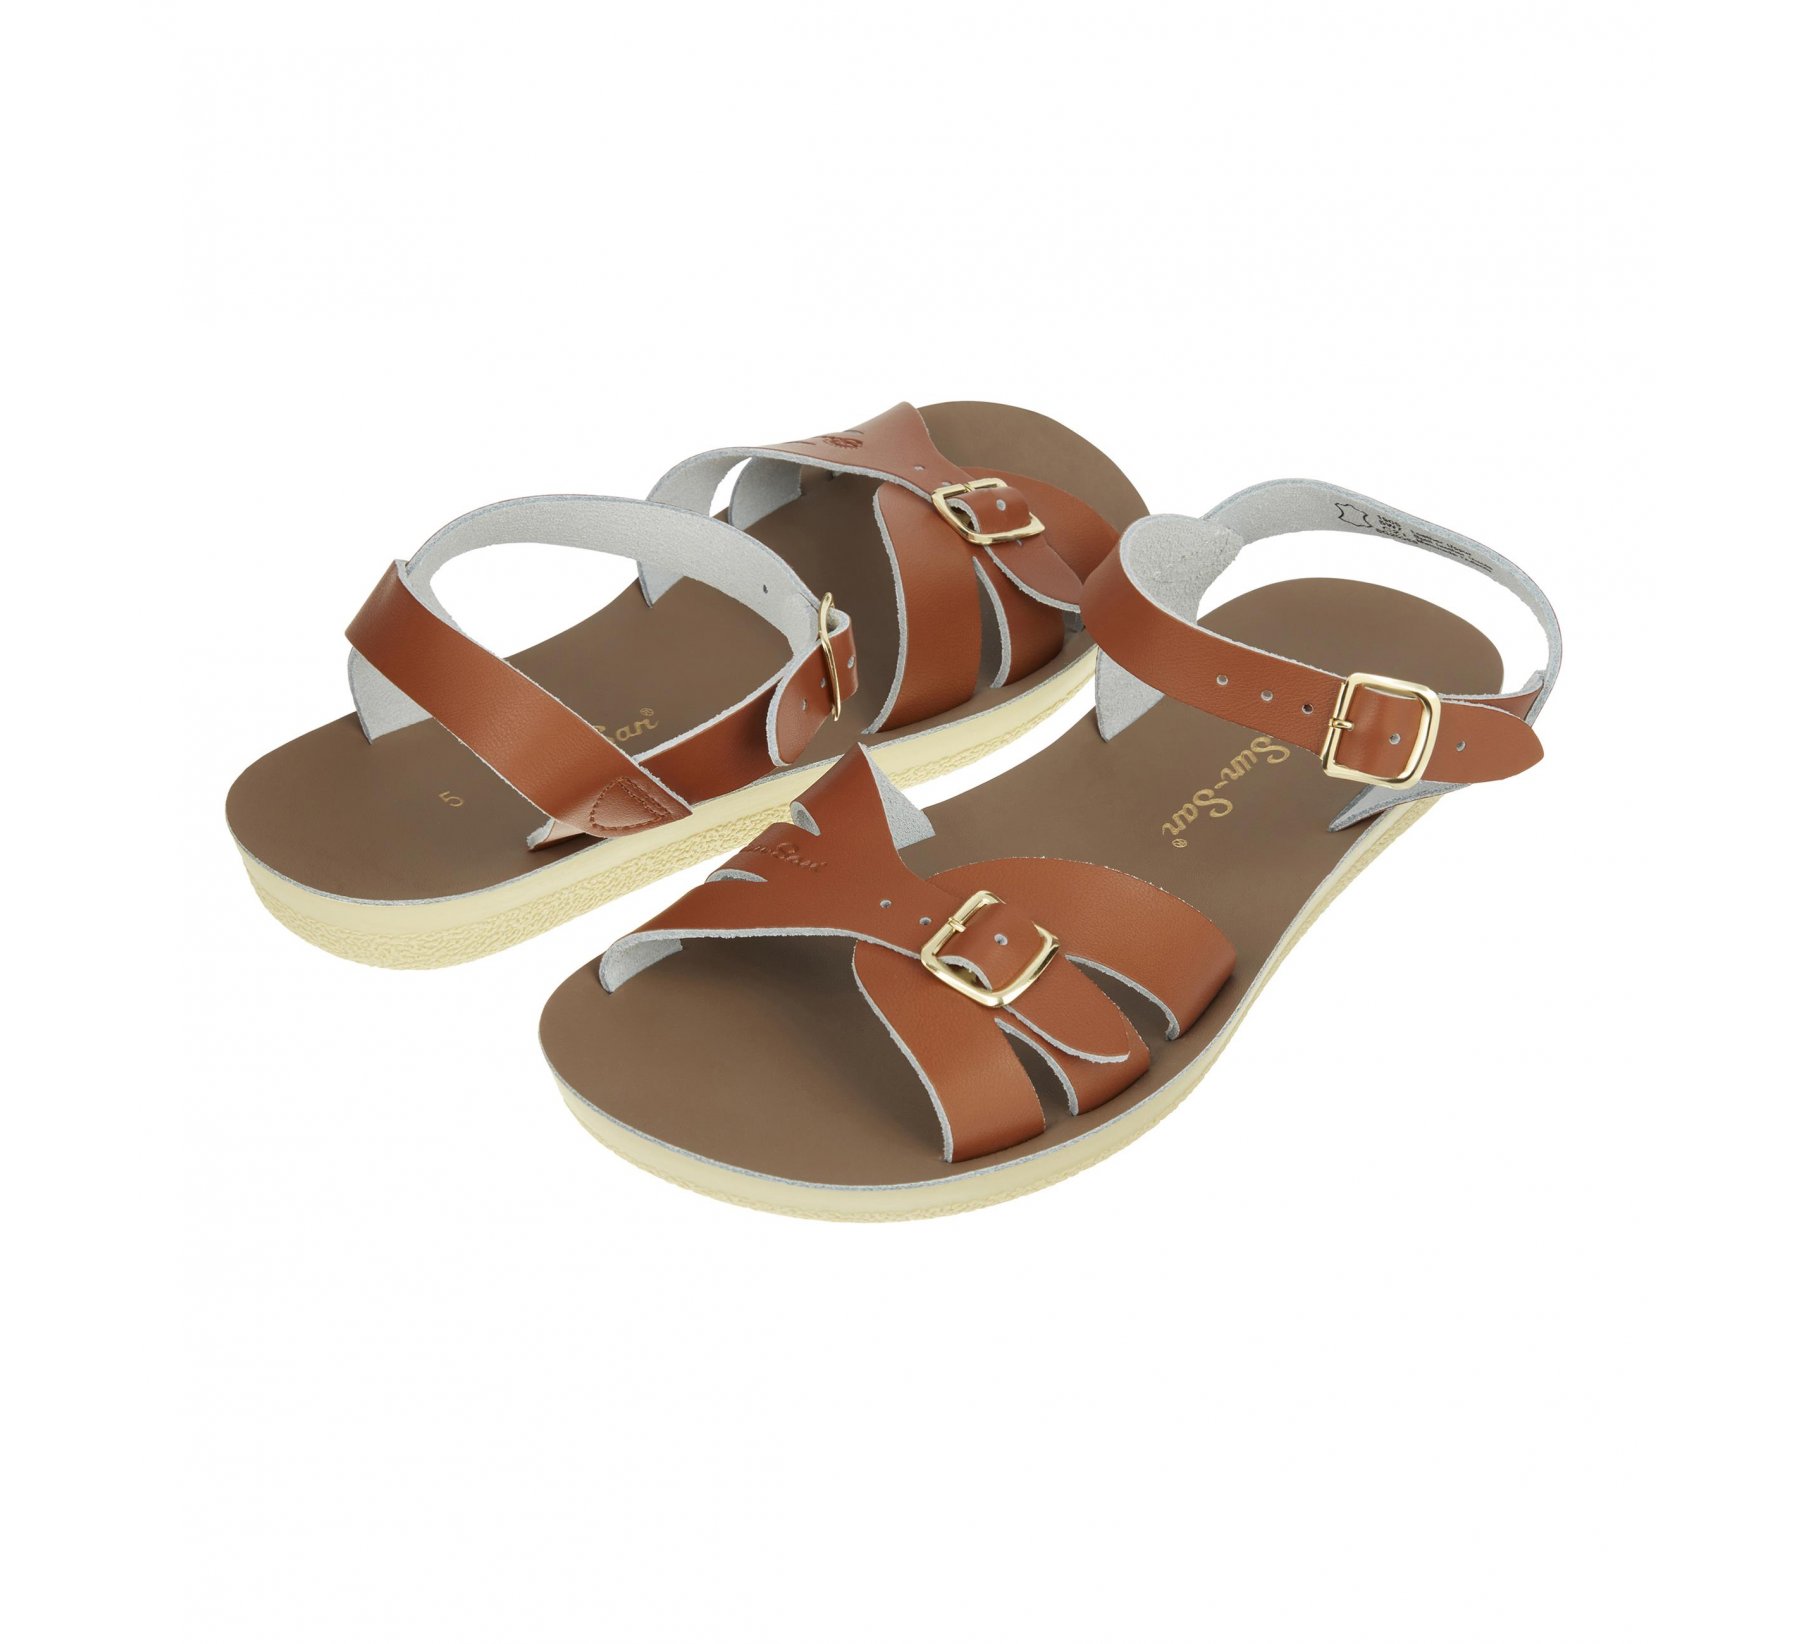 Boardwalk Brun Roux - Salt Water Sandals